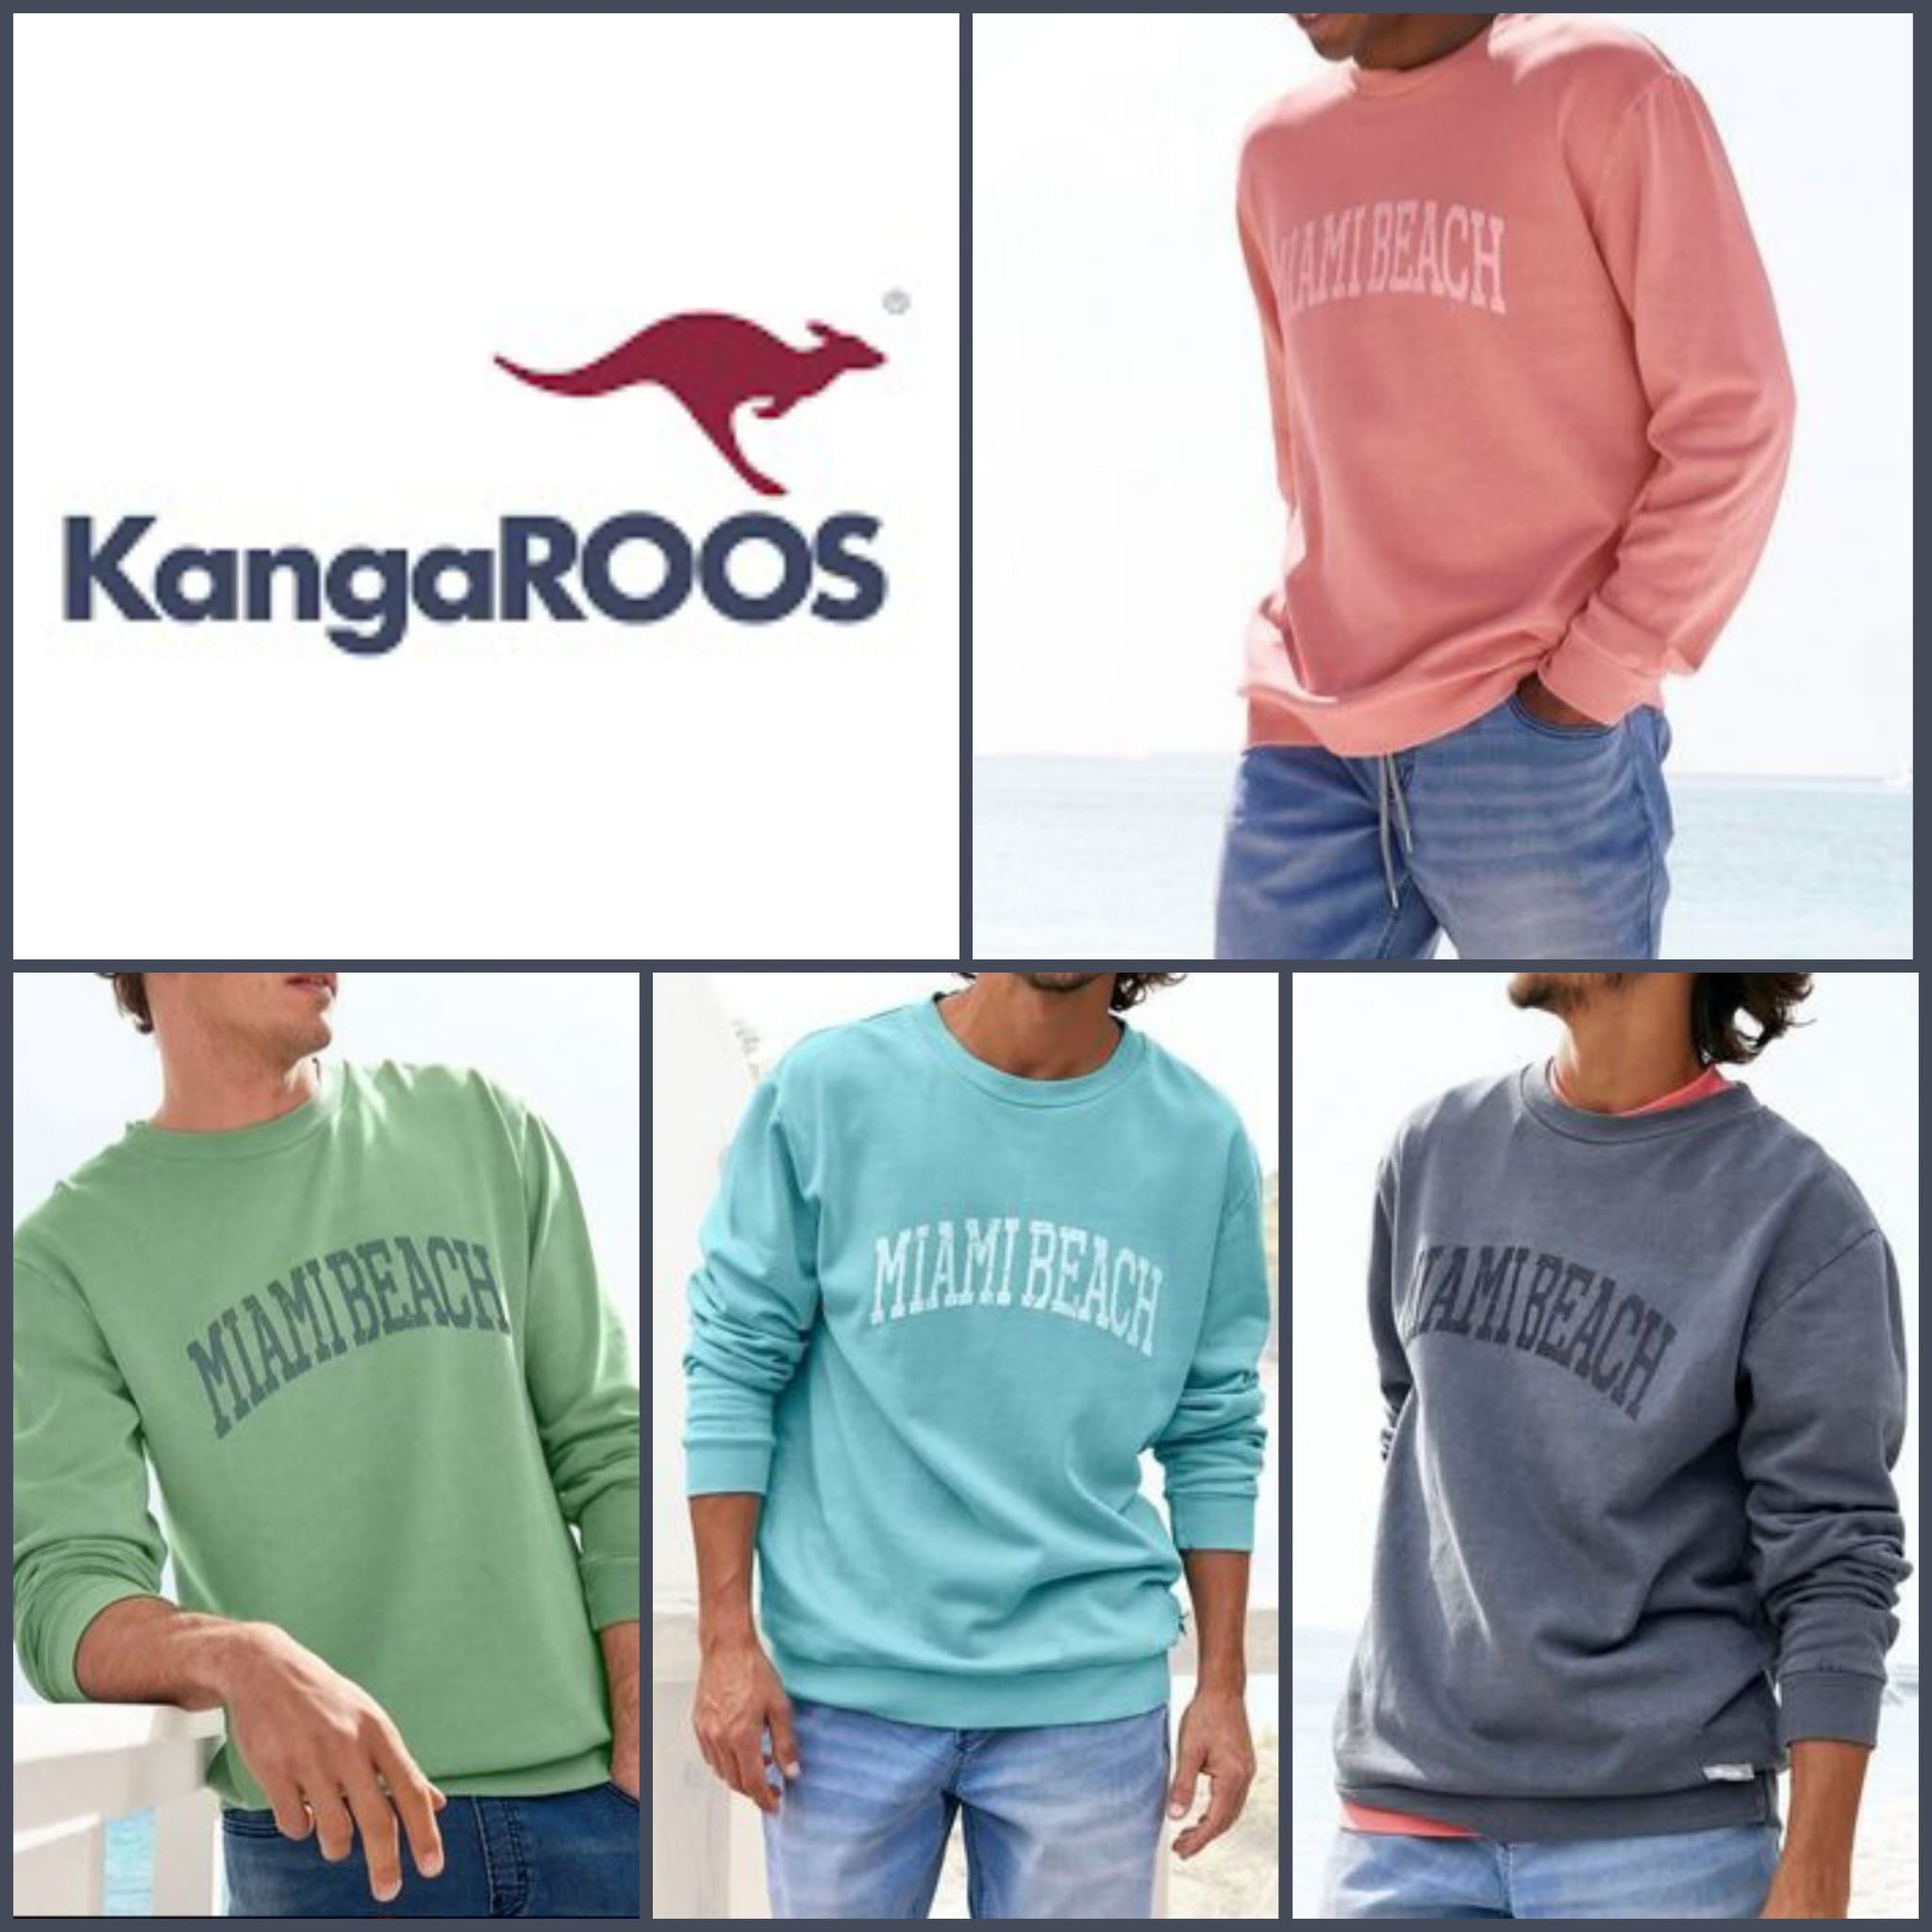 Men's sweatshirts from KangaROOS